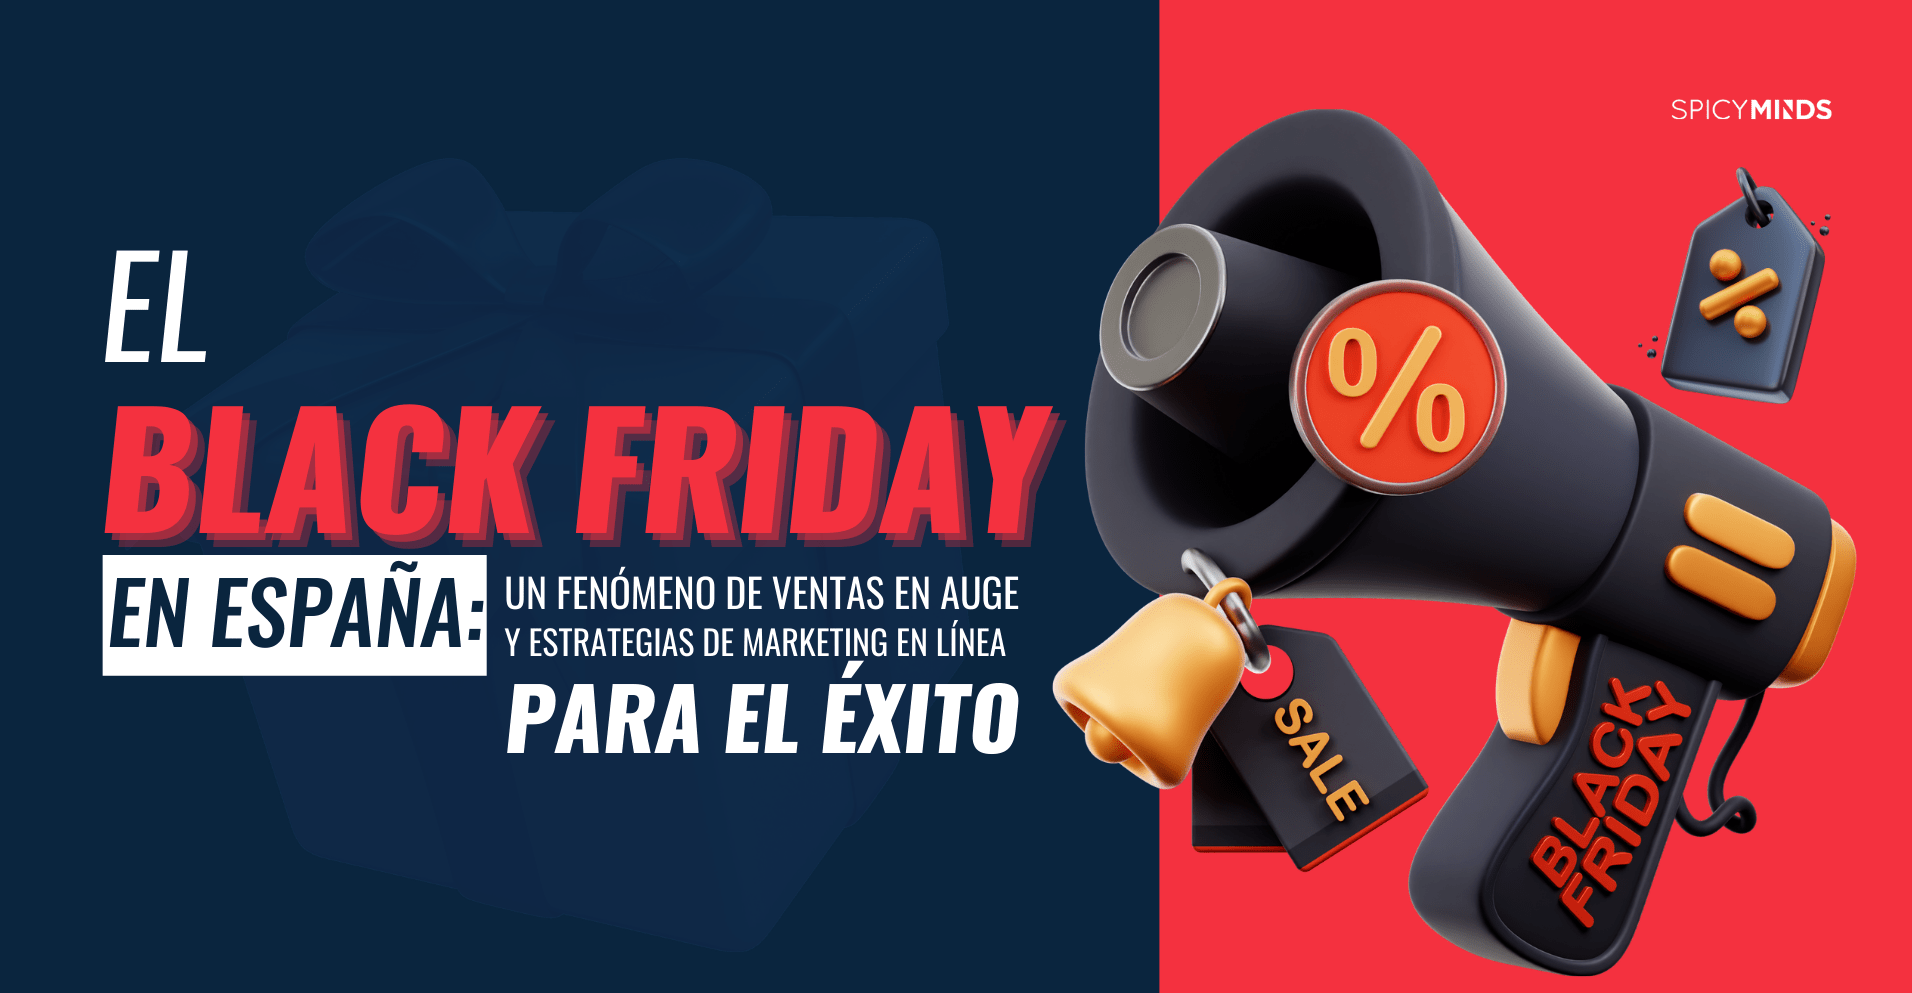 El Black Friday en España: Un fenómeno de ventas en auge y estrategias de marketing en línea para el éxito